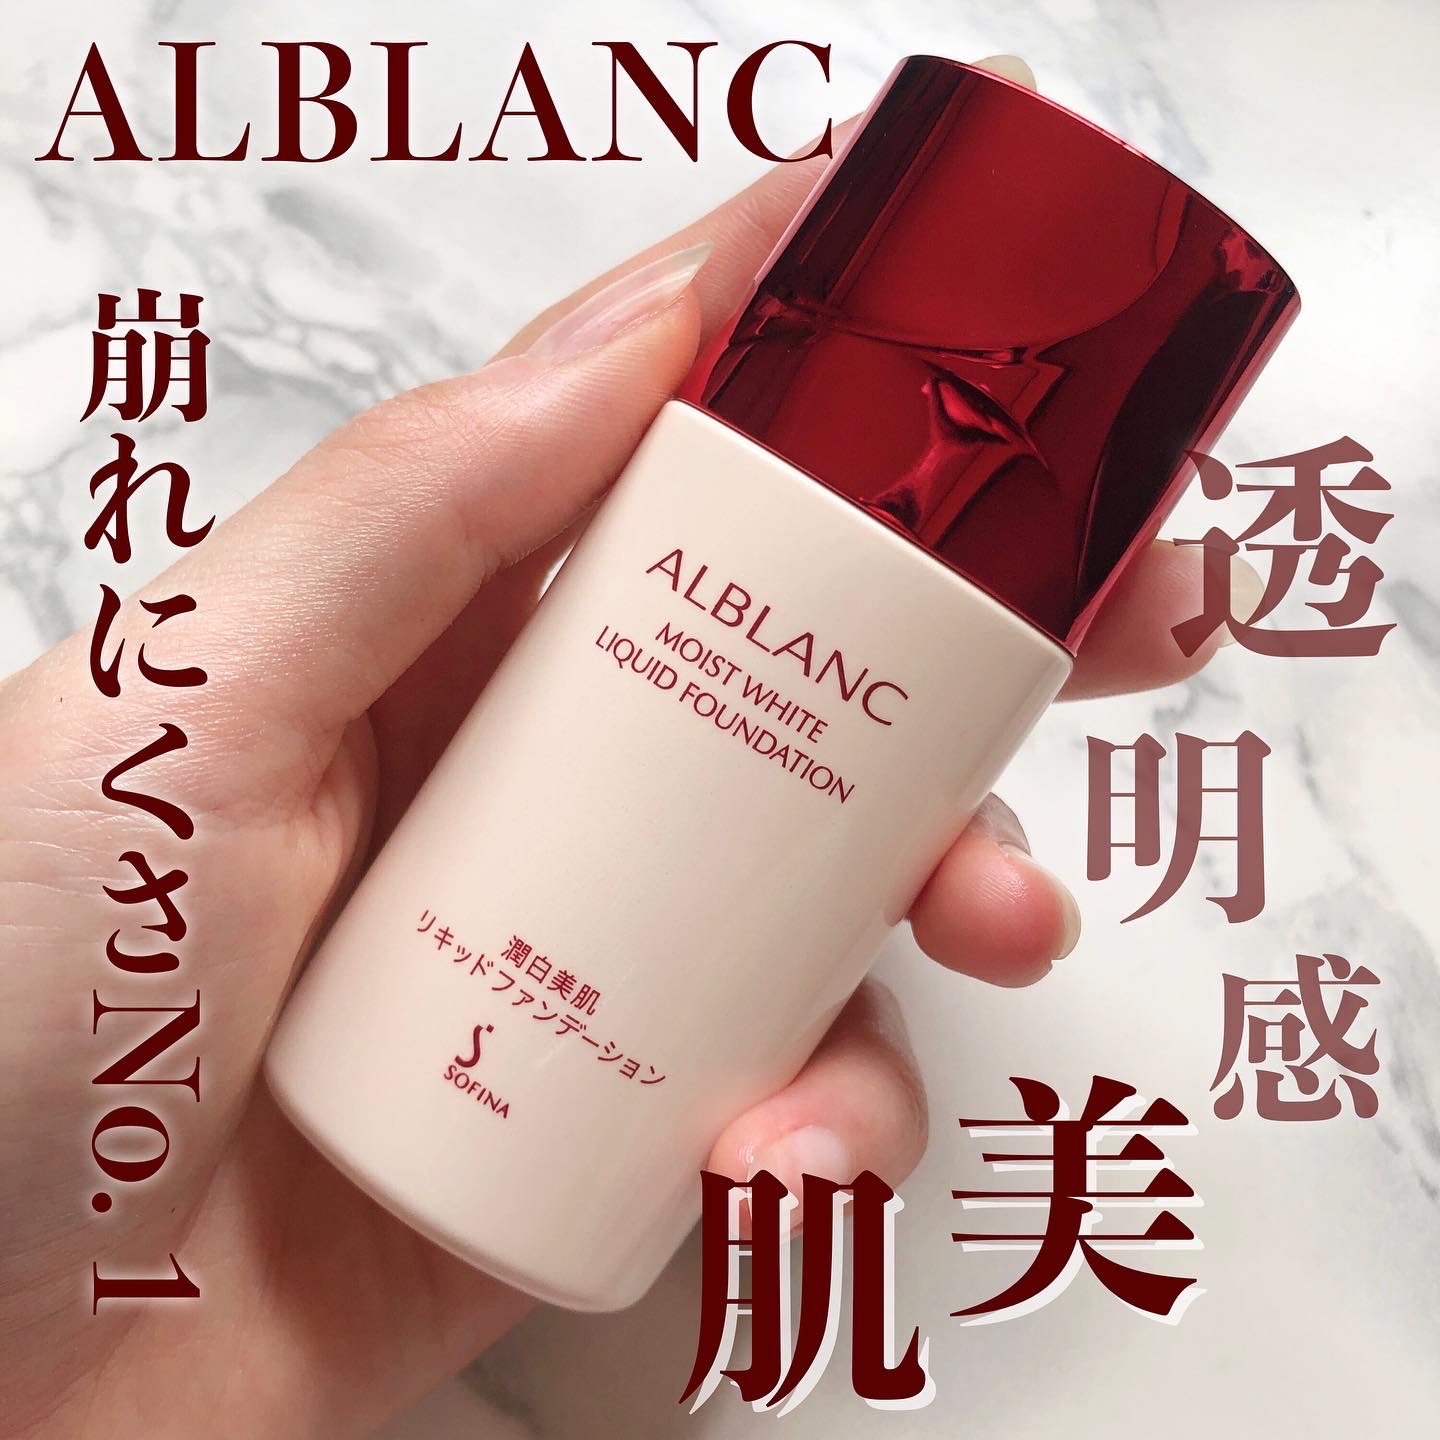 ALBLANC(アルブラン) / 潤白美肌リキッドファンデーションの口コミ写真 ...